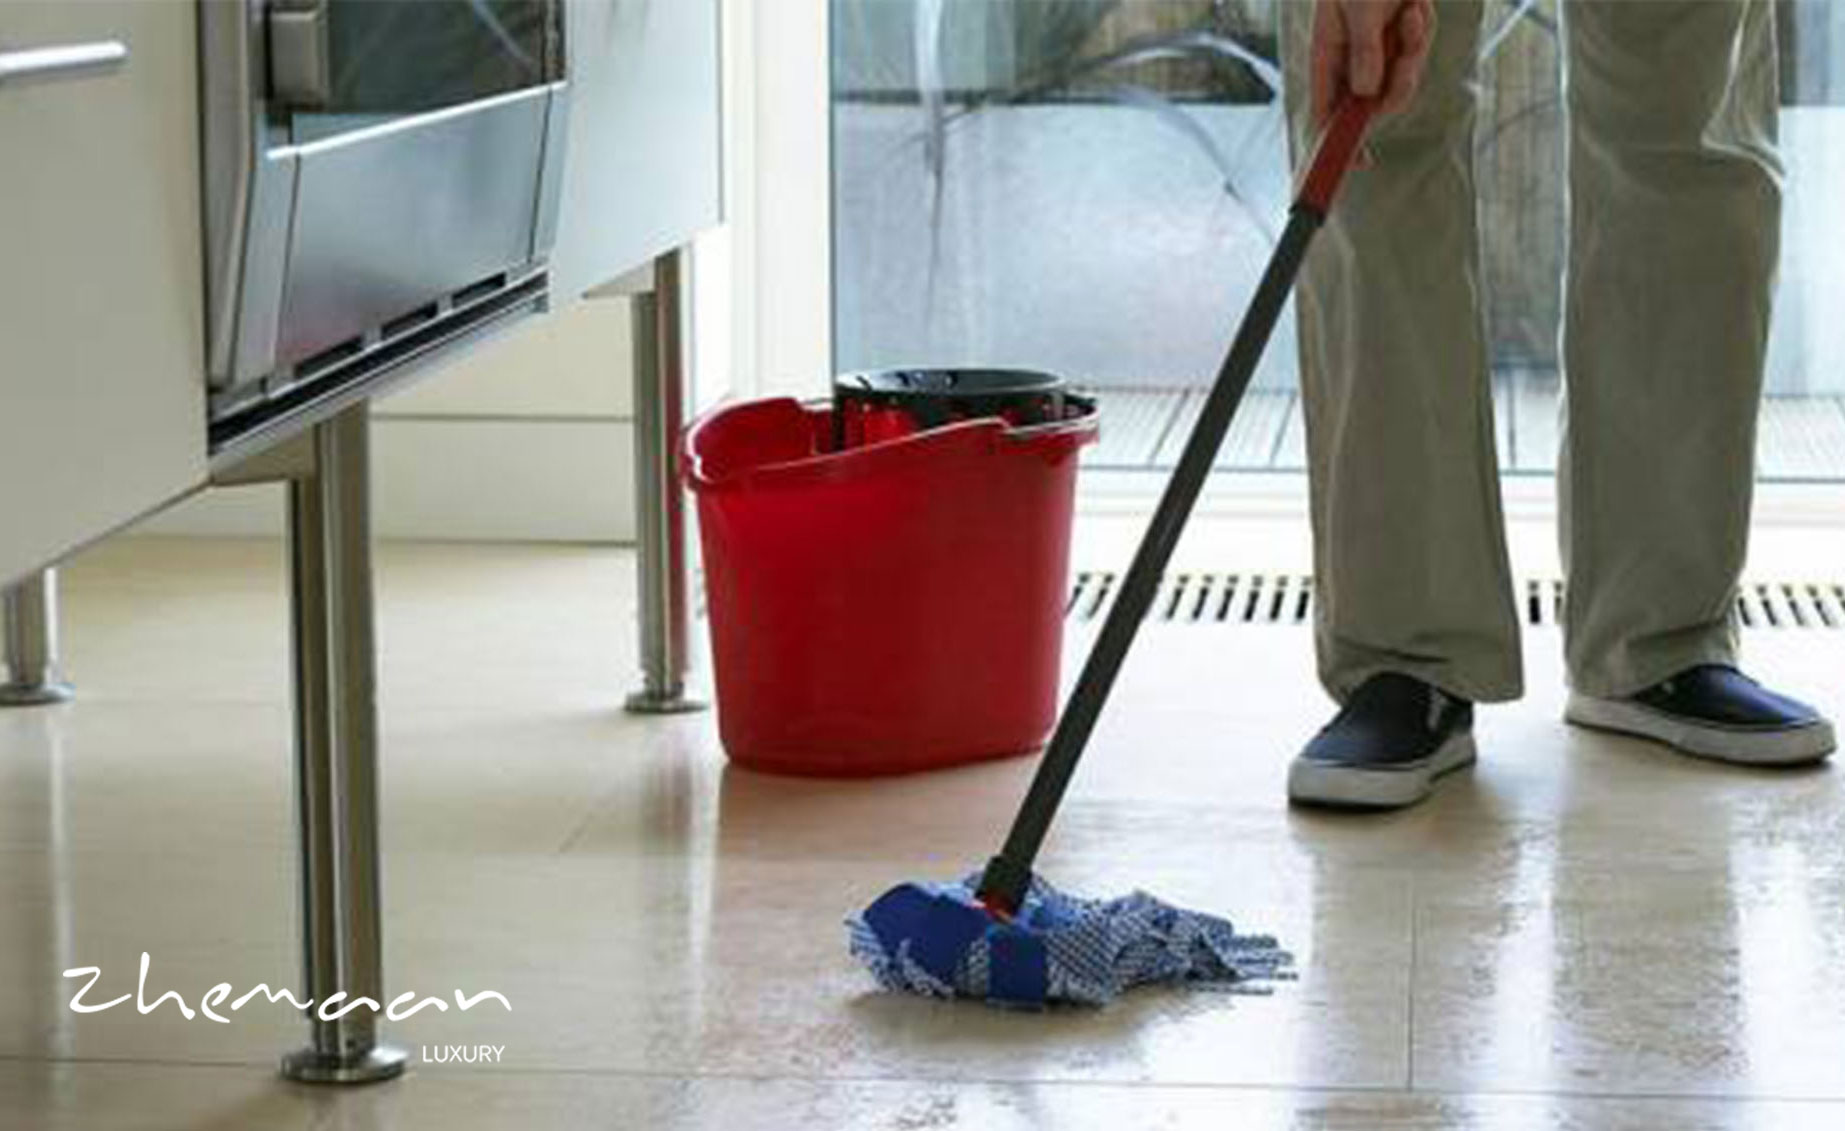 چند راهکار ساده خانگی برای تمیزکردن فصای بهداشتی2